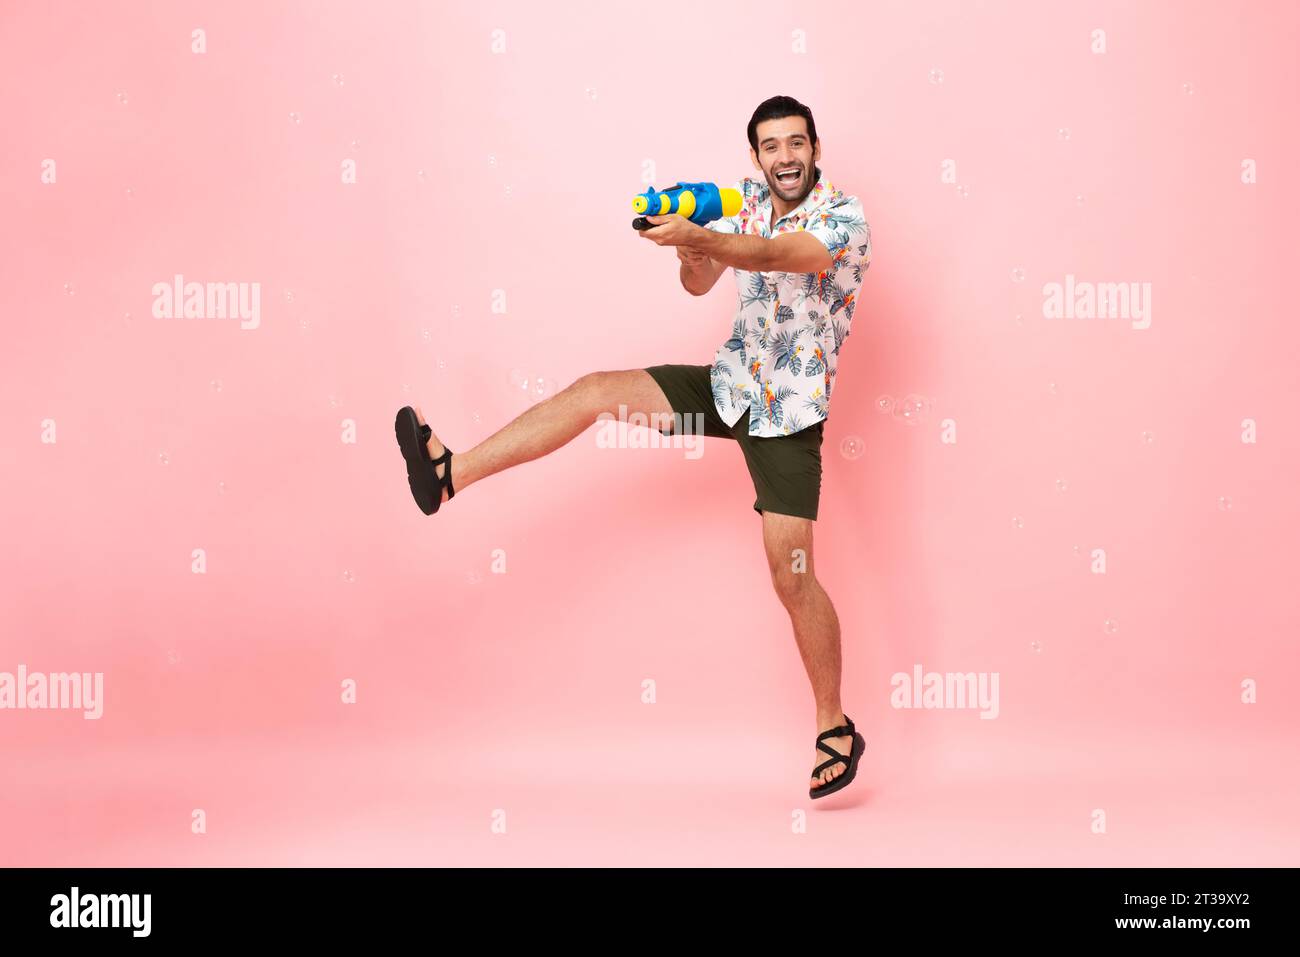 Hübscher, lächelnder junger kaukasischer Touristenmann, der mit einer Wasserpistole spielt und im rosafarbenen Studio für das Songkran Festival in Thailand und im Süden springt Stockfoto